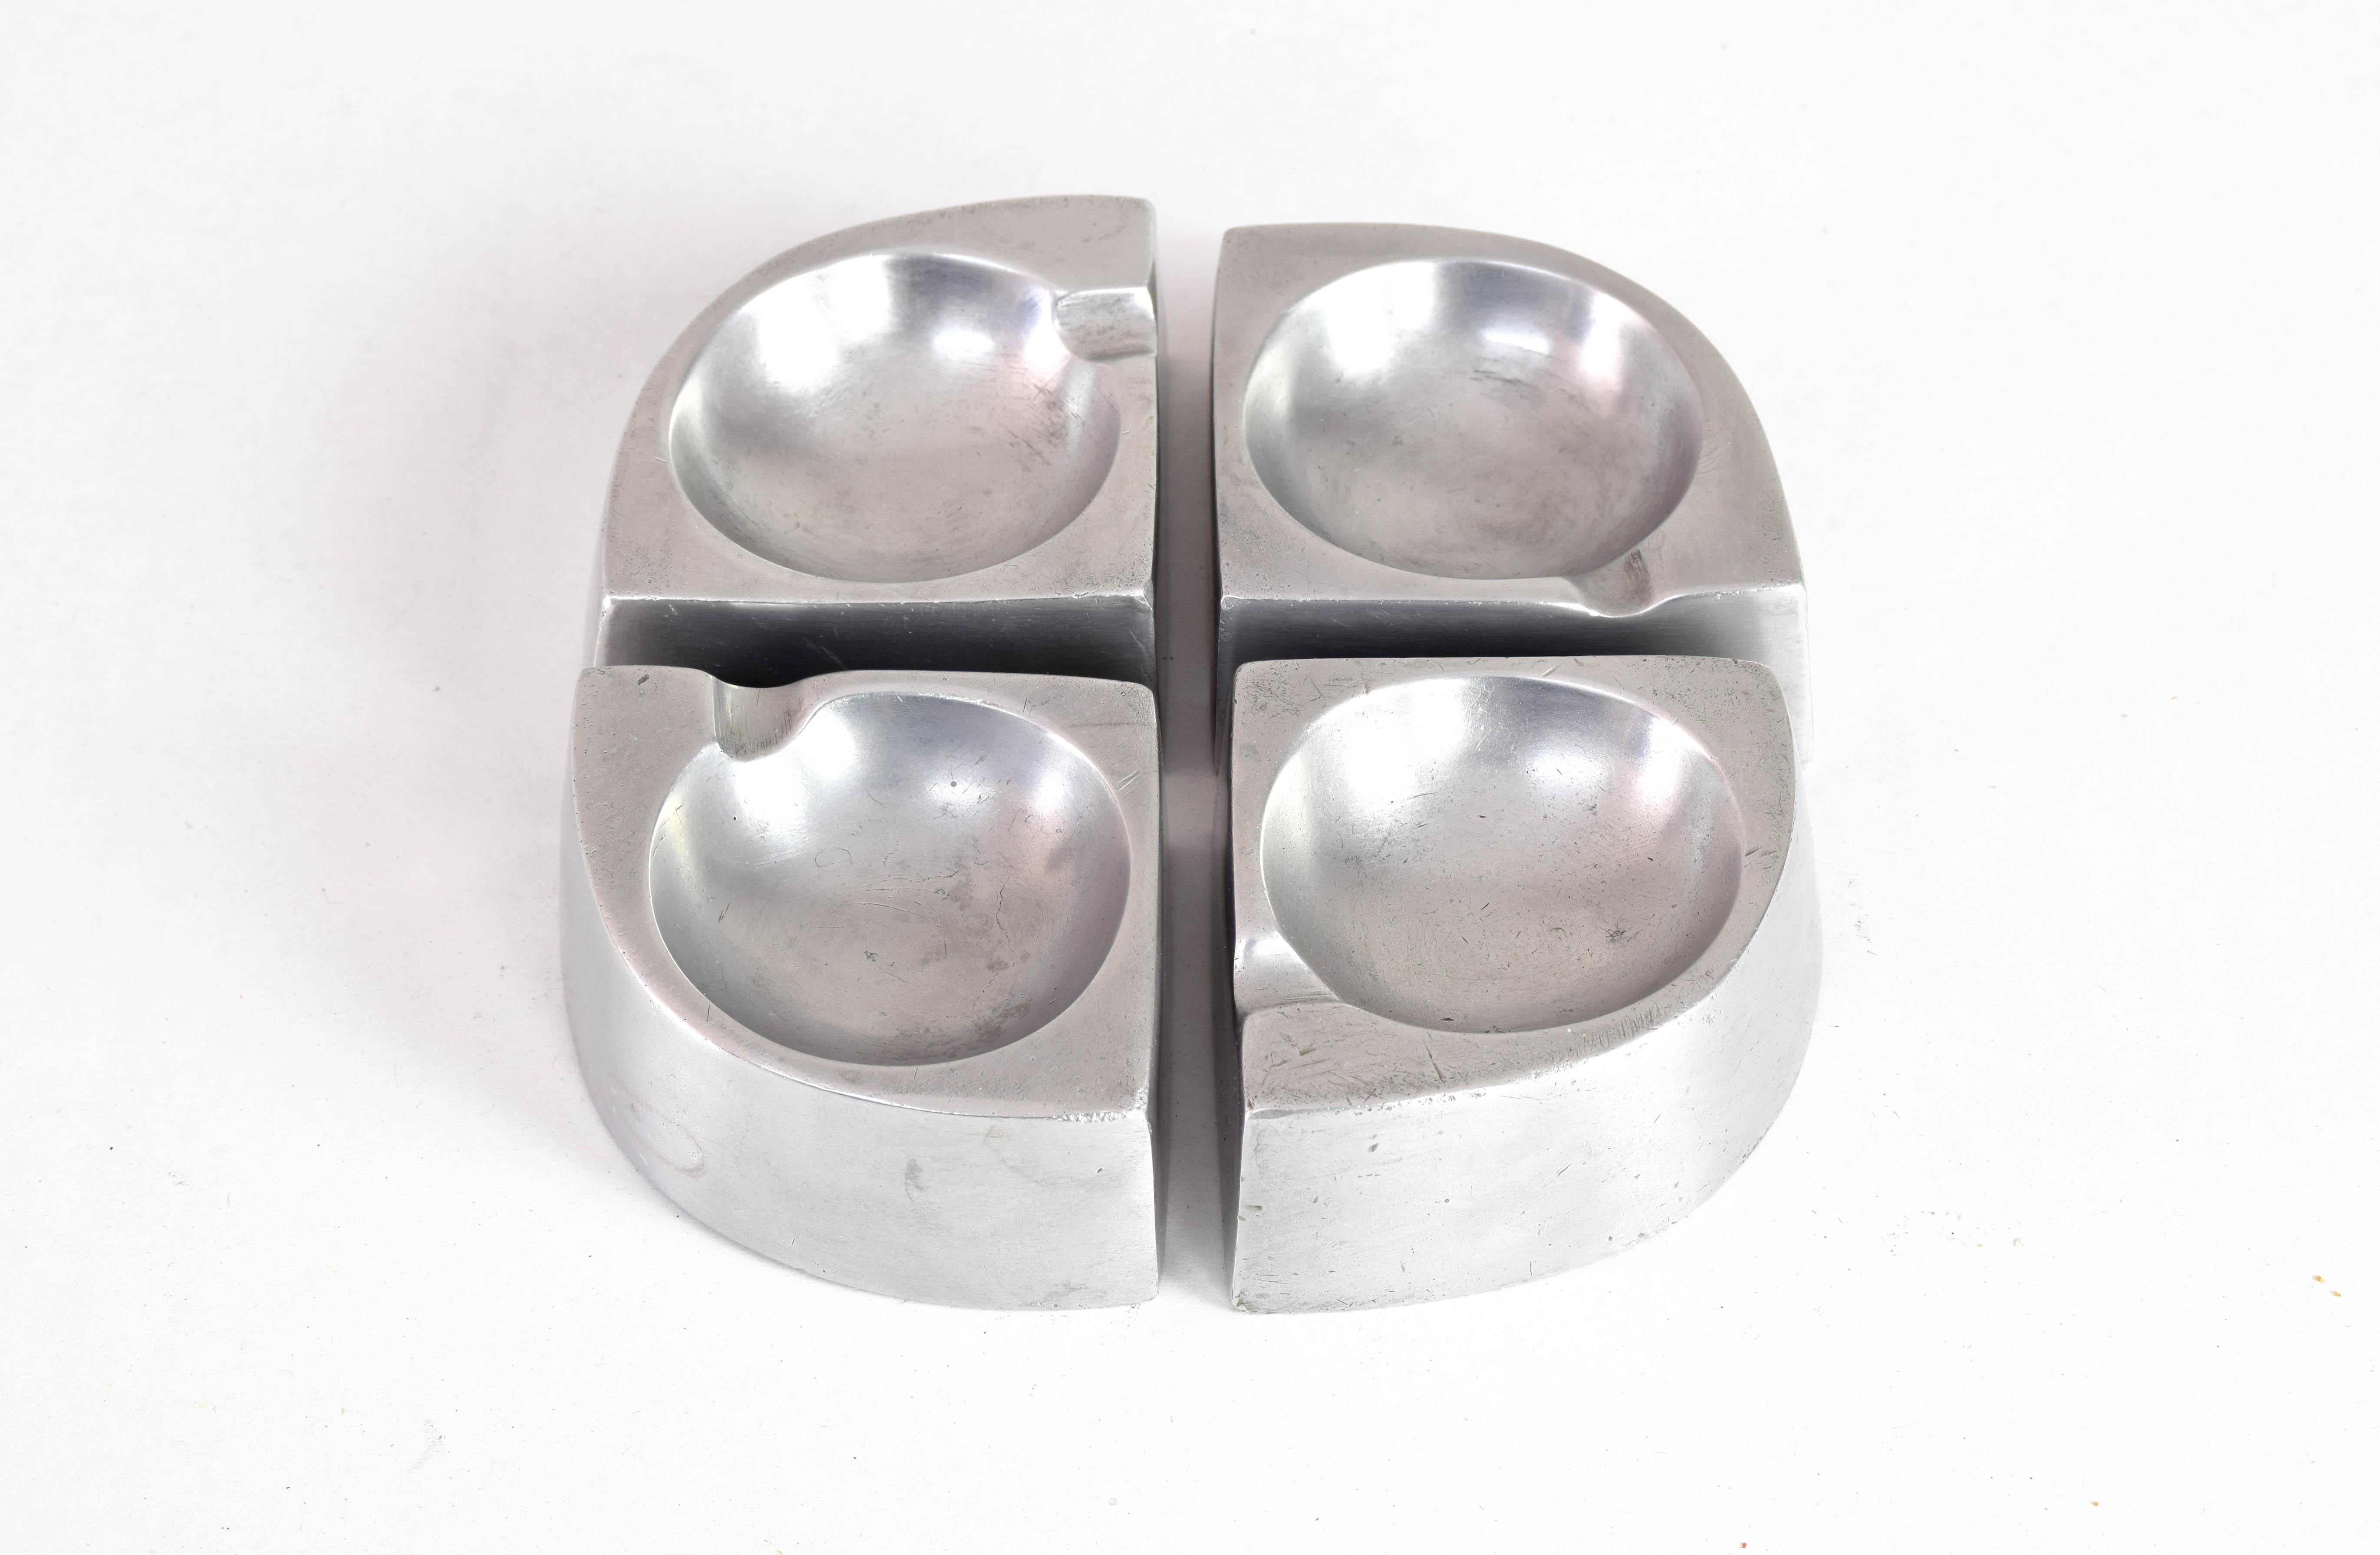 Satz von vier kleinen Aschenbechern, die zusammen ein skulpturales, handgefertigtes Stück Aluminium bilden, das in den 1960er Jahren in Dänemark hergestellt wurde.
Ein Stück mit dem Charakter eines handgefertigten Stücks, das einzigartig und